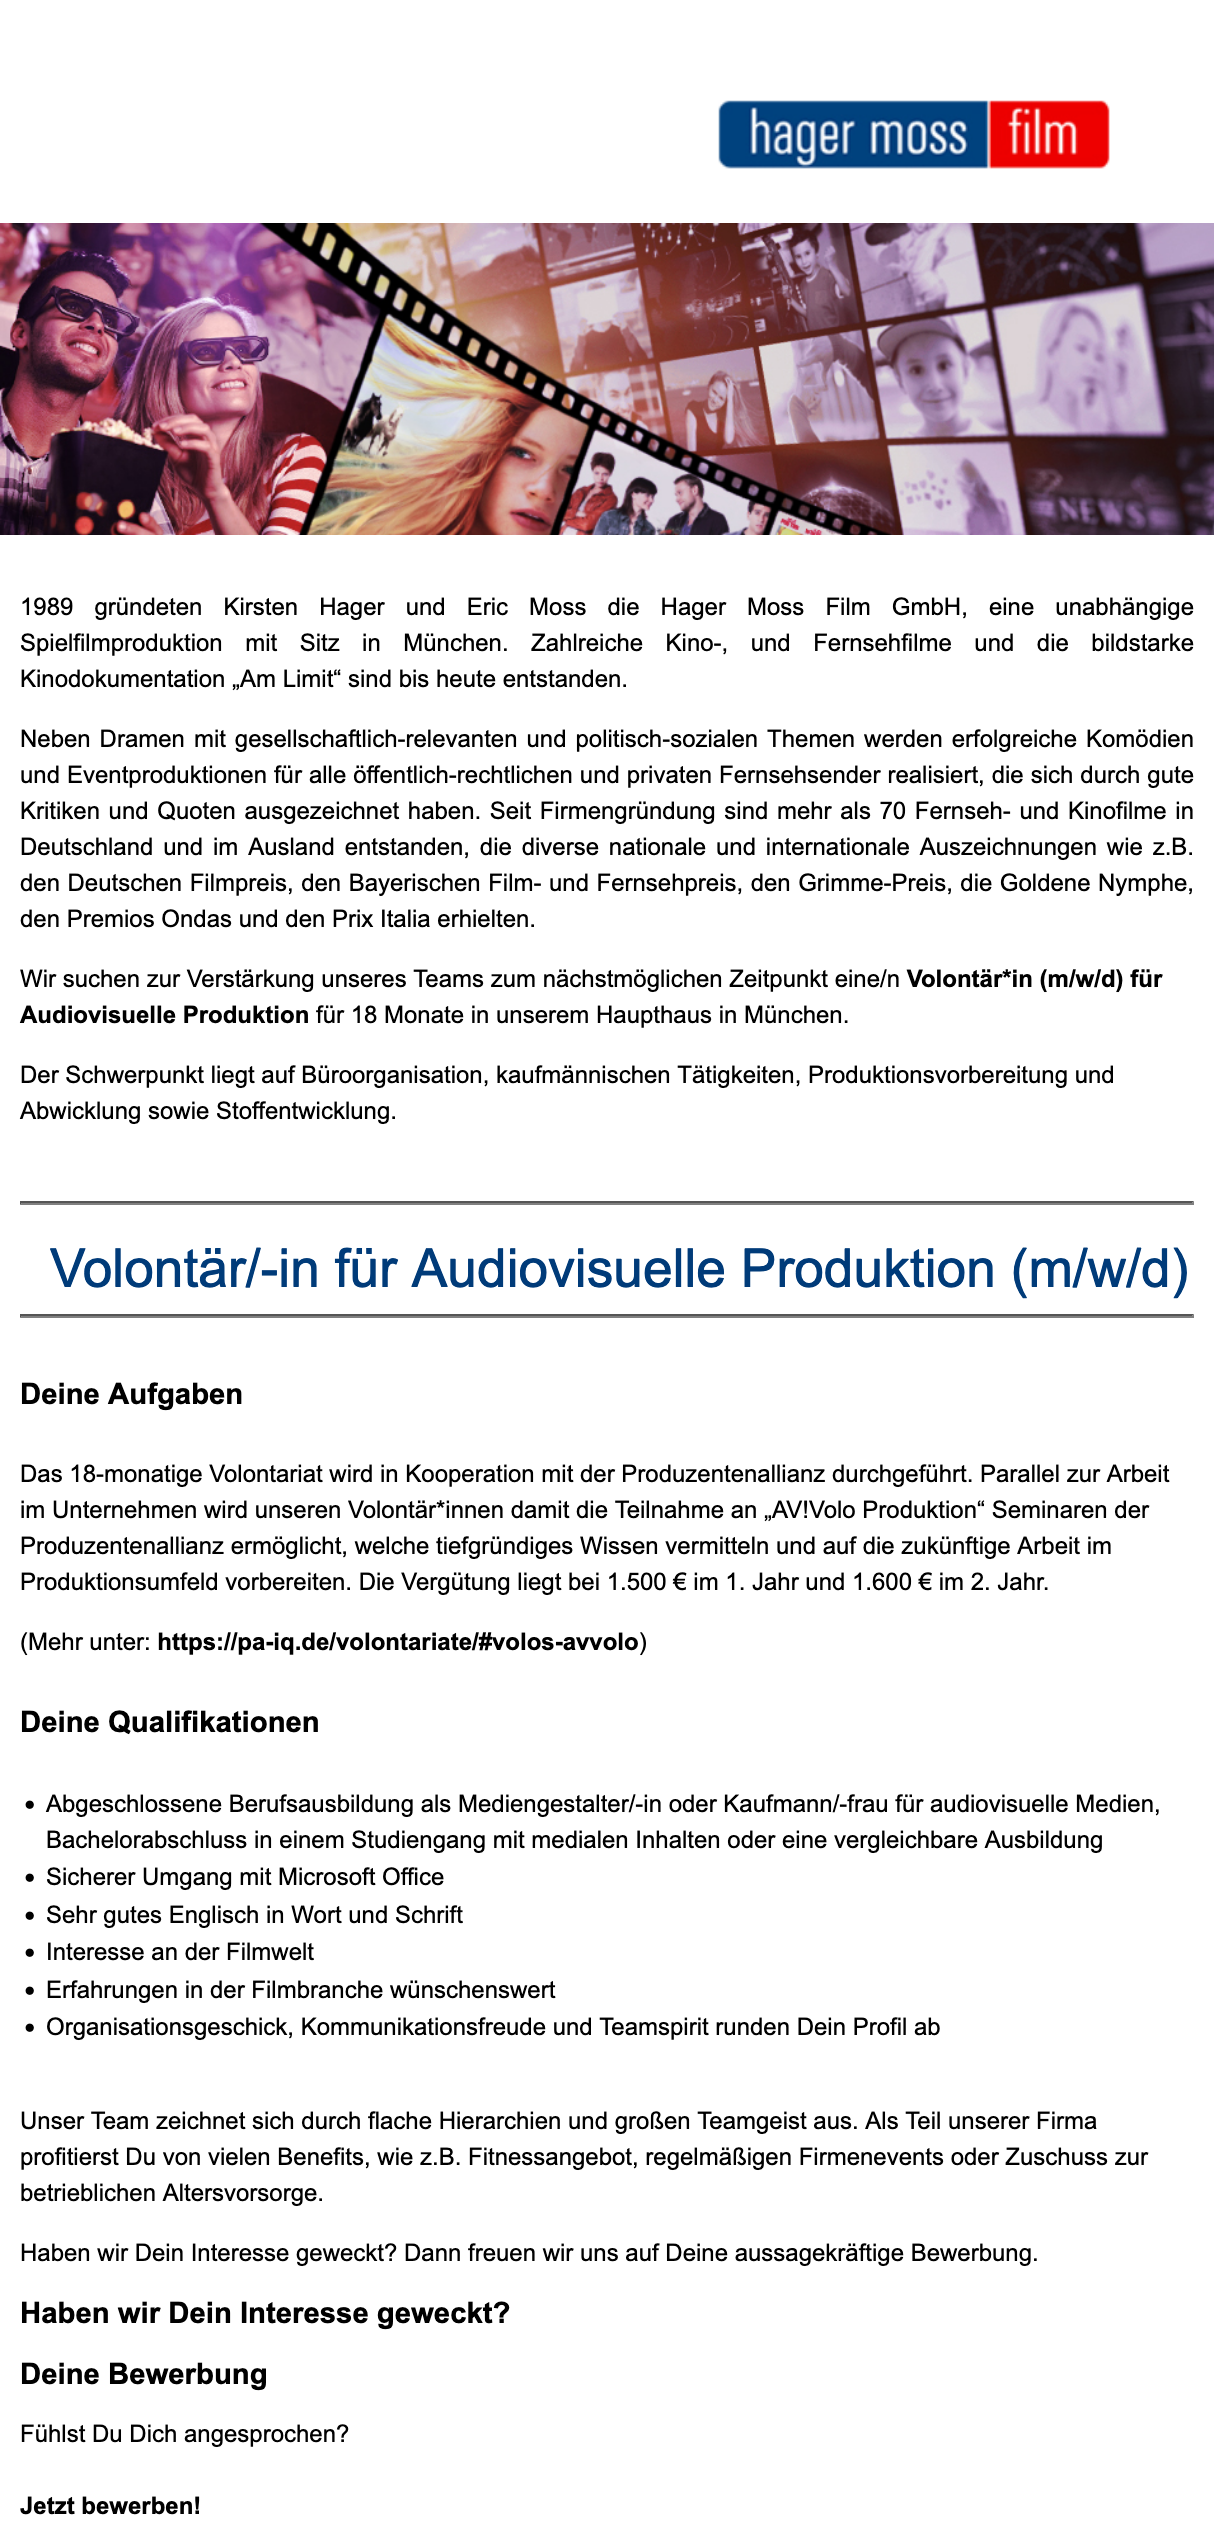 Volontär/-in für Audiovisuelle Produktion (m/w/d)